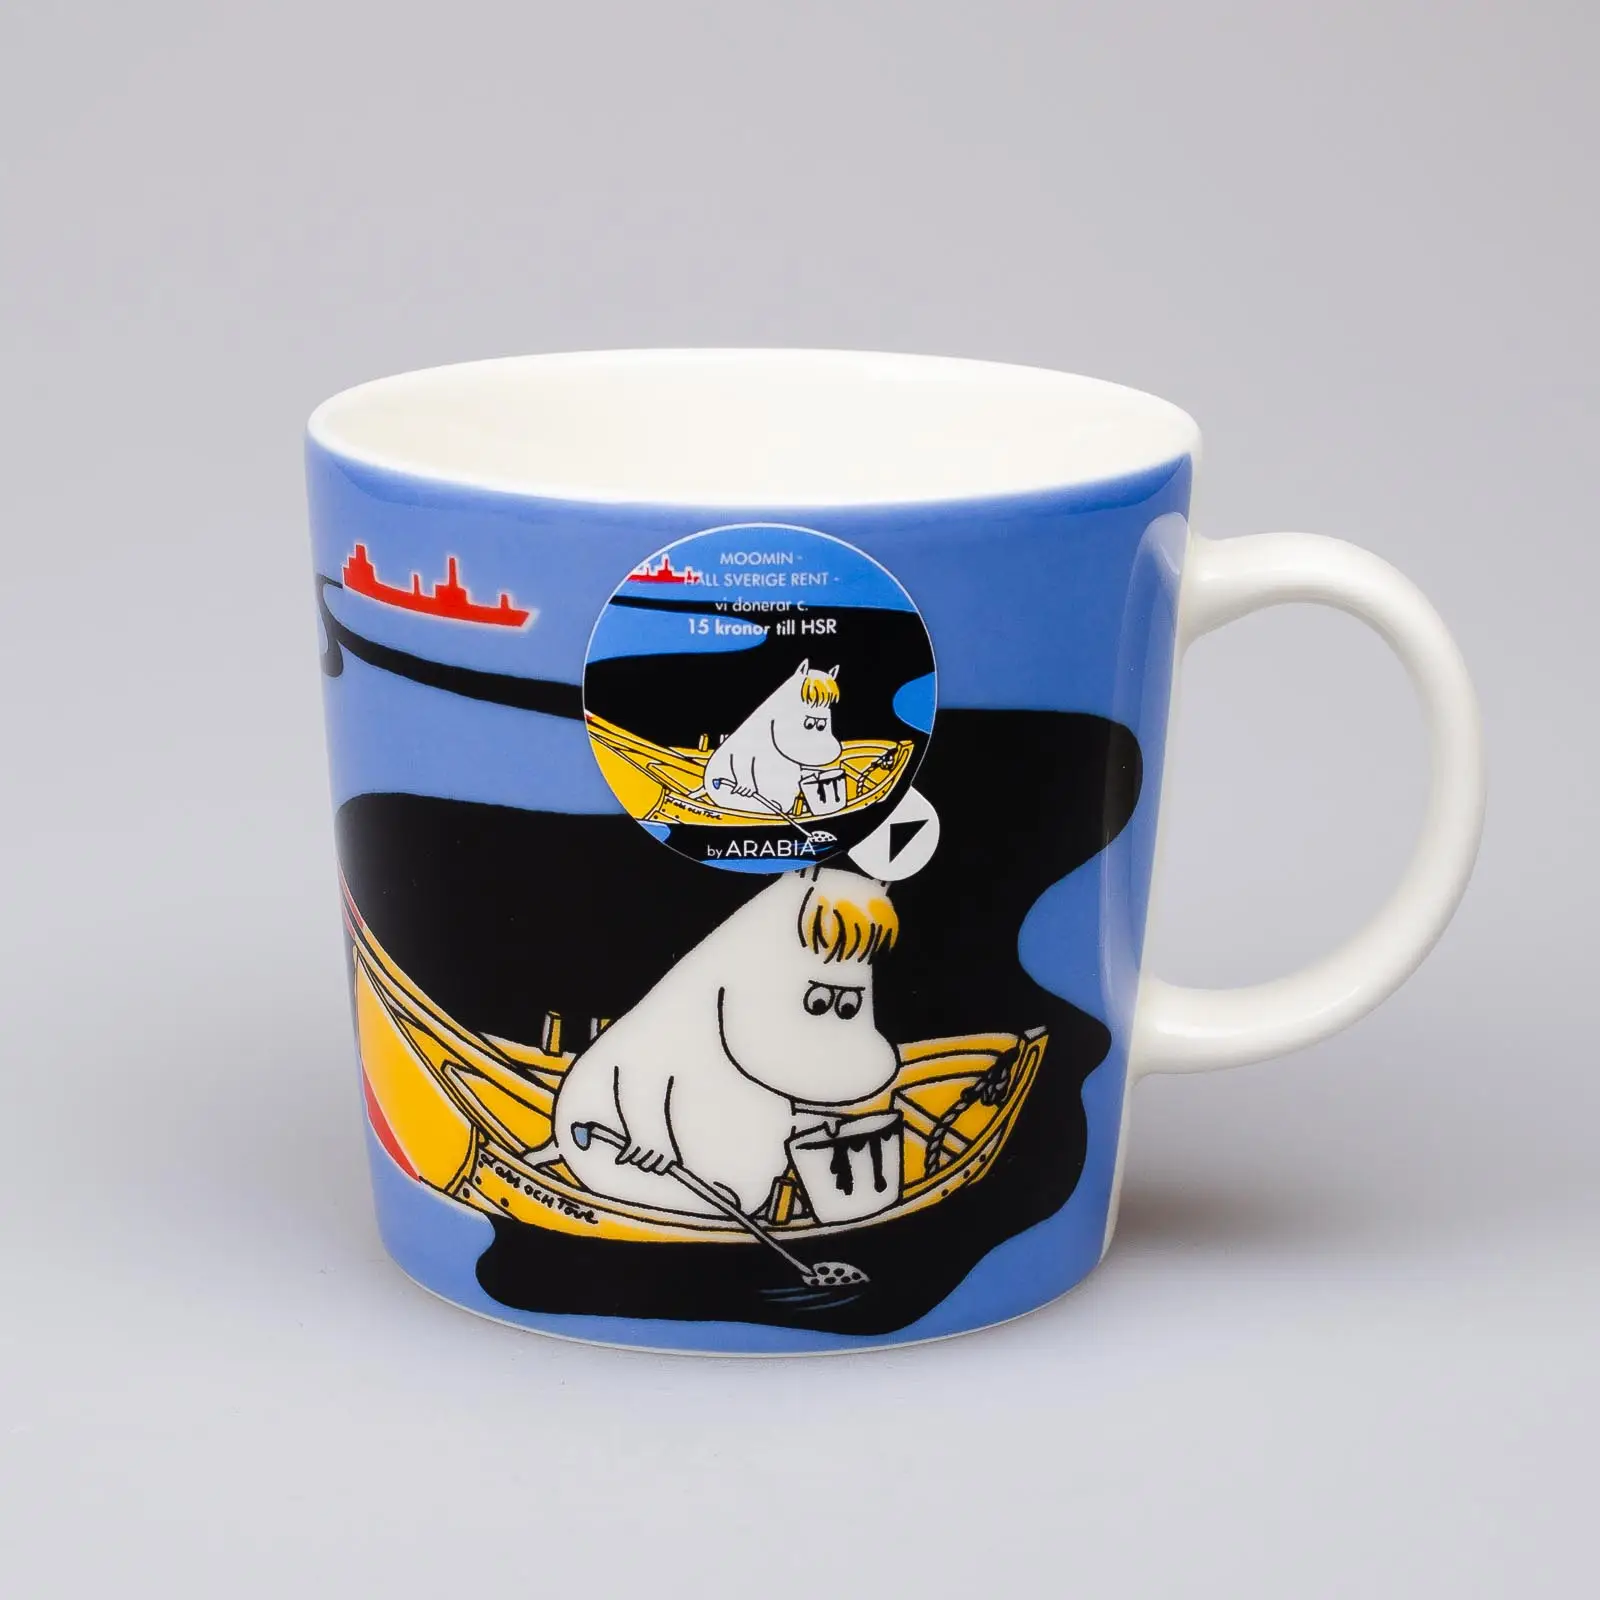 Moomin mug – Our Coast – (2016)